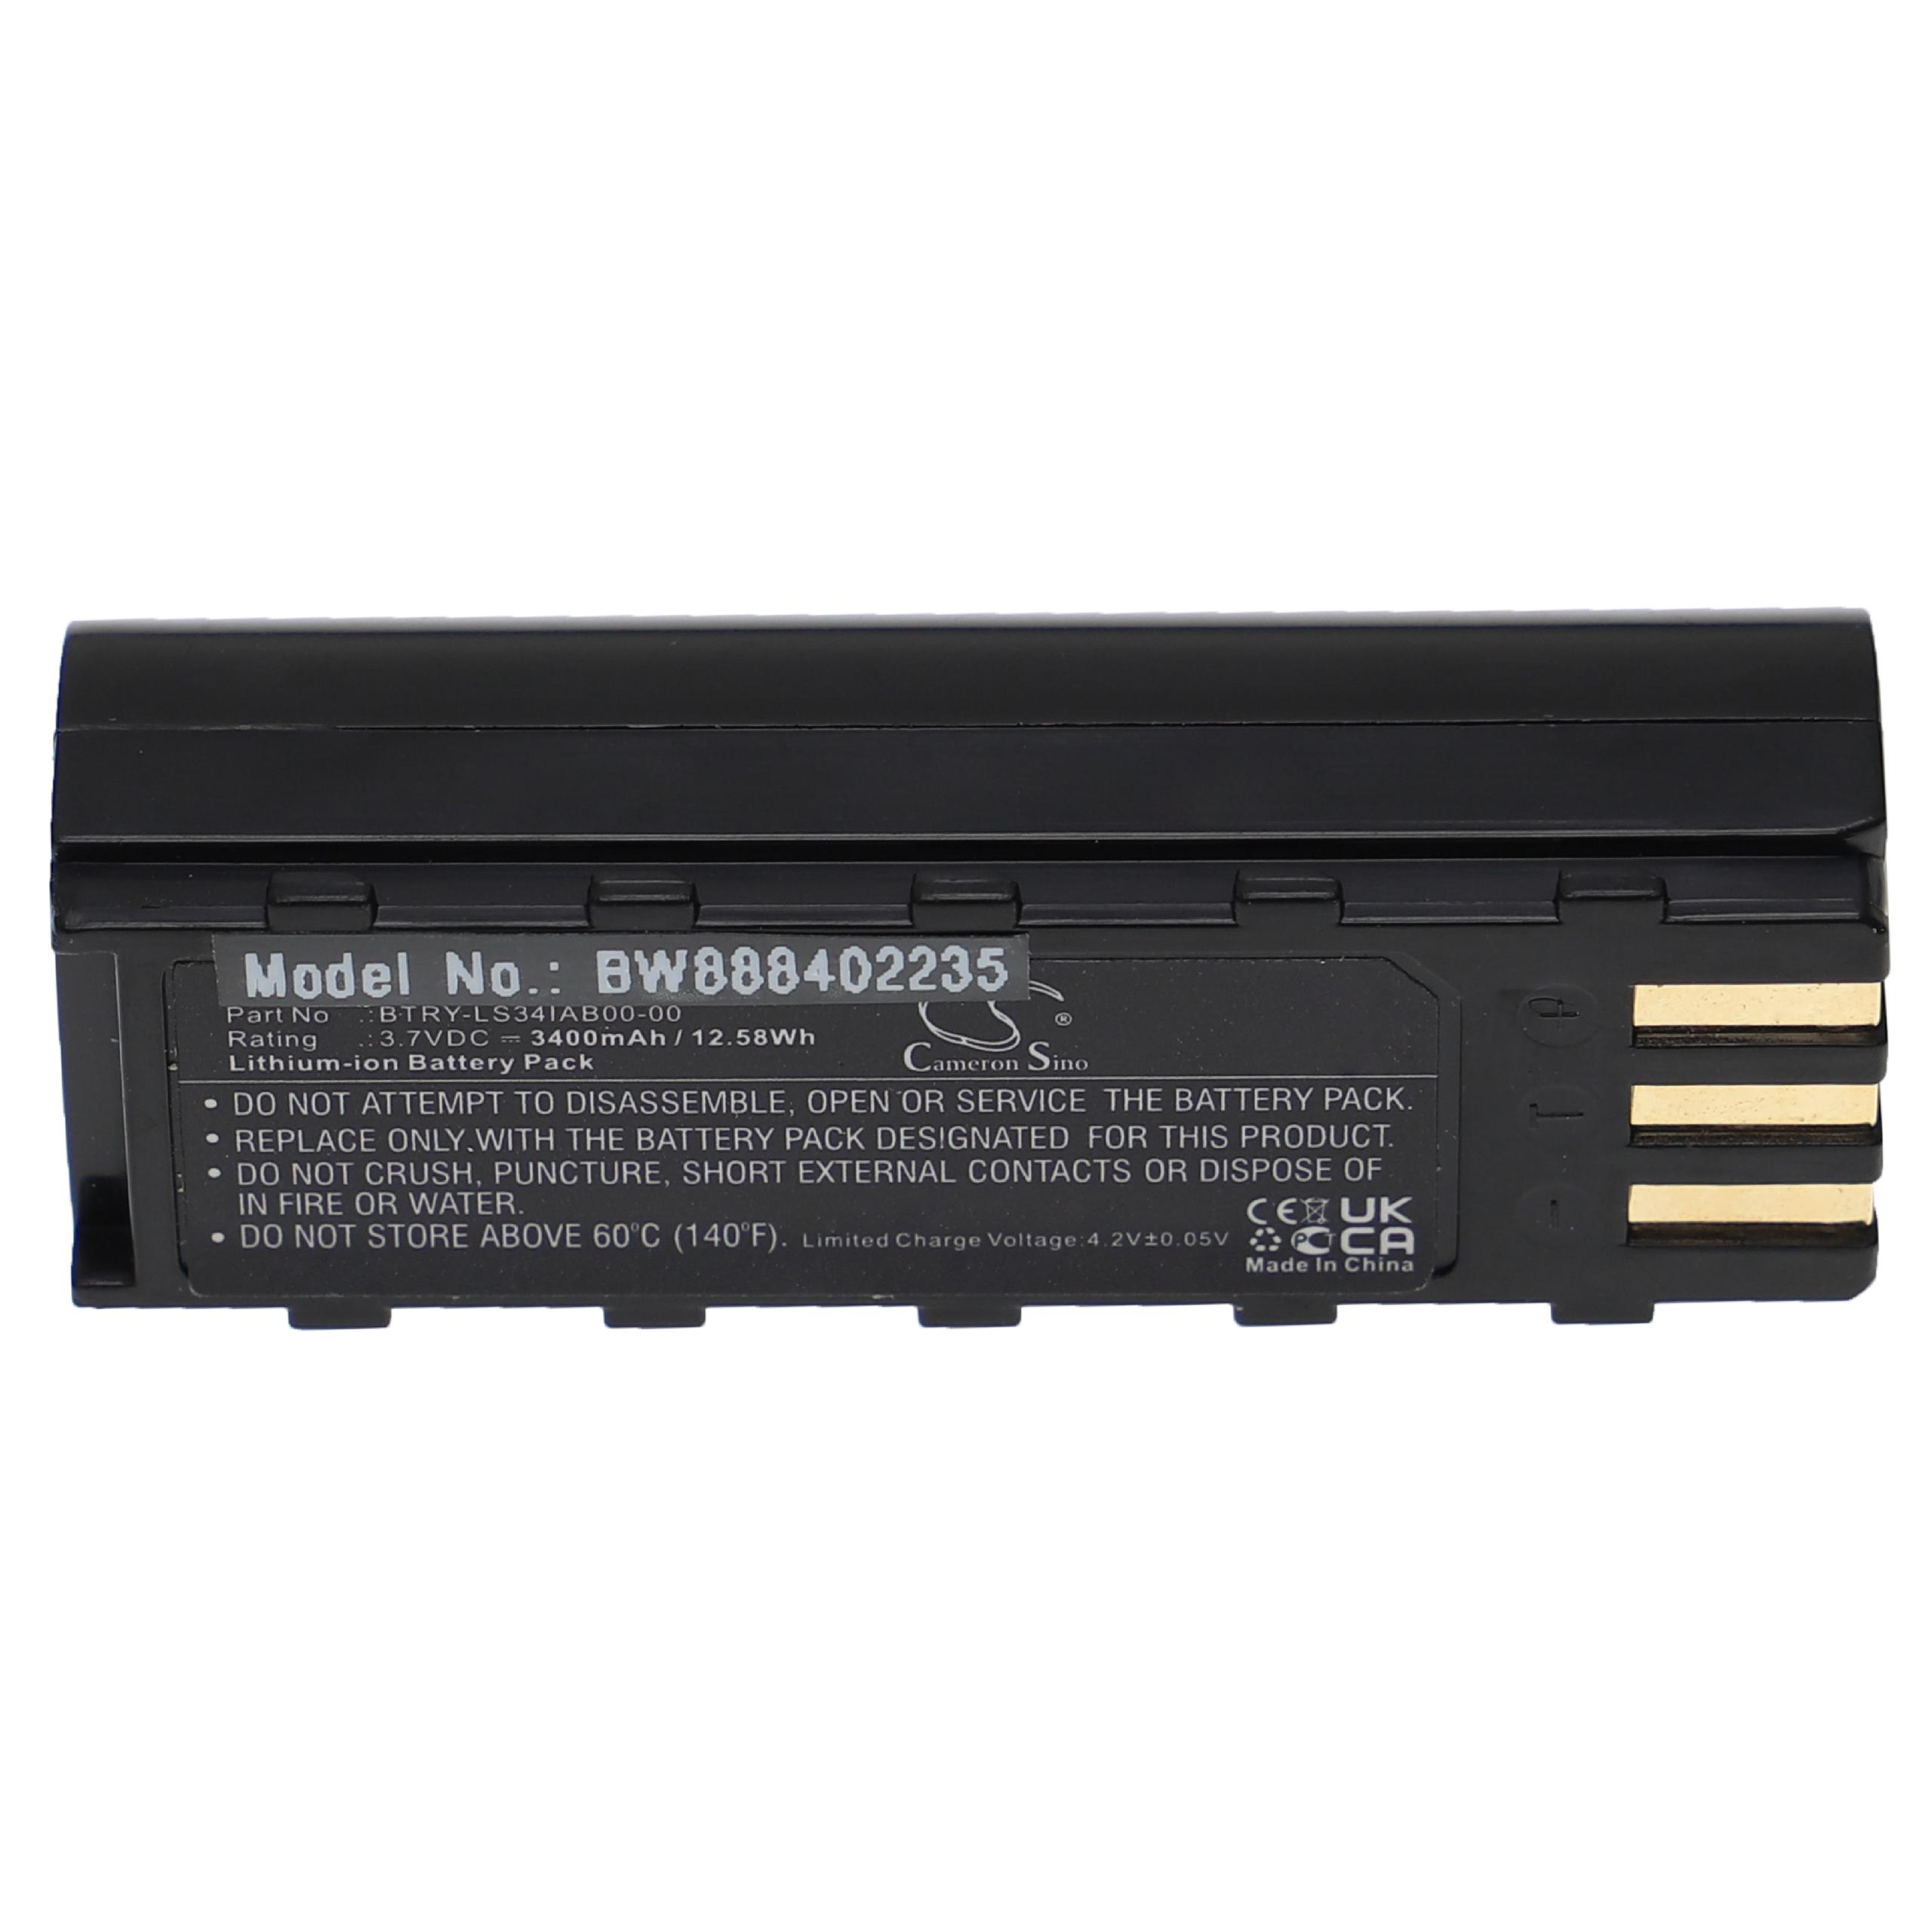 Batterie remplace Motorola 21-62606-01 pour scanner de code-barre - 3400mAh 3,7V Li-ion